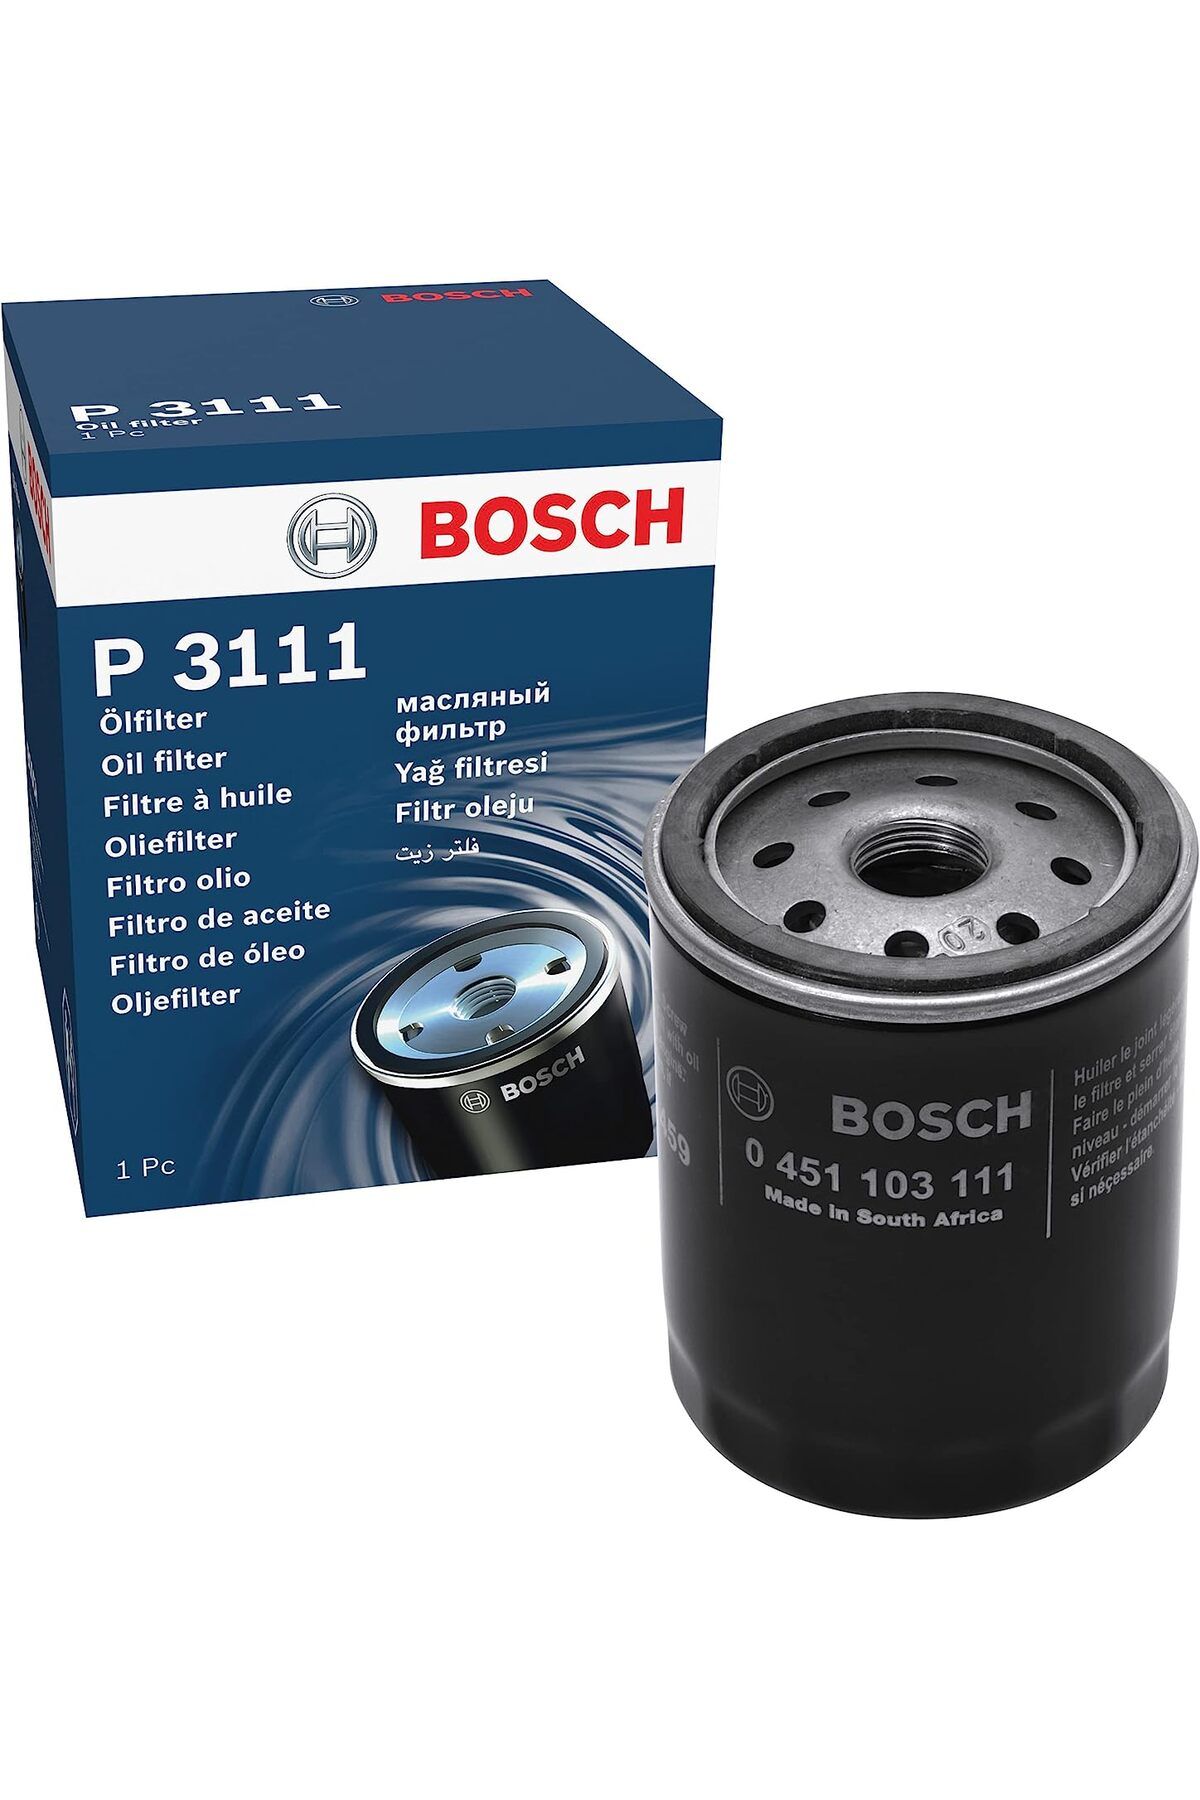 Bosch YAĞ FİLTRESİ 0451103111 ŞAHİN , KARTAL , TOFAŞ DOĞAN